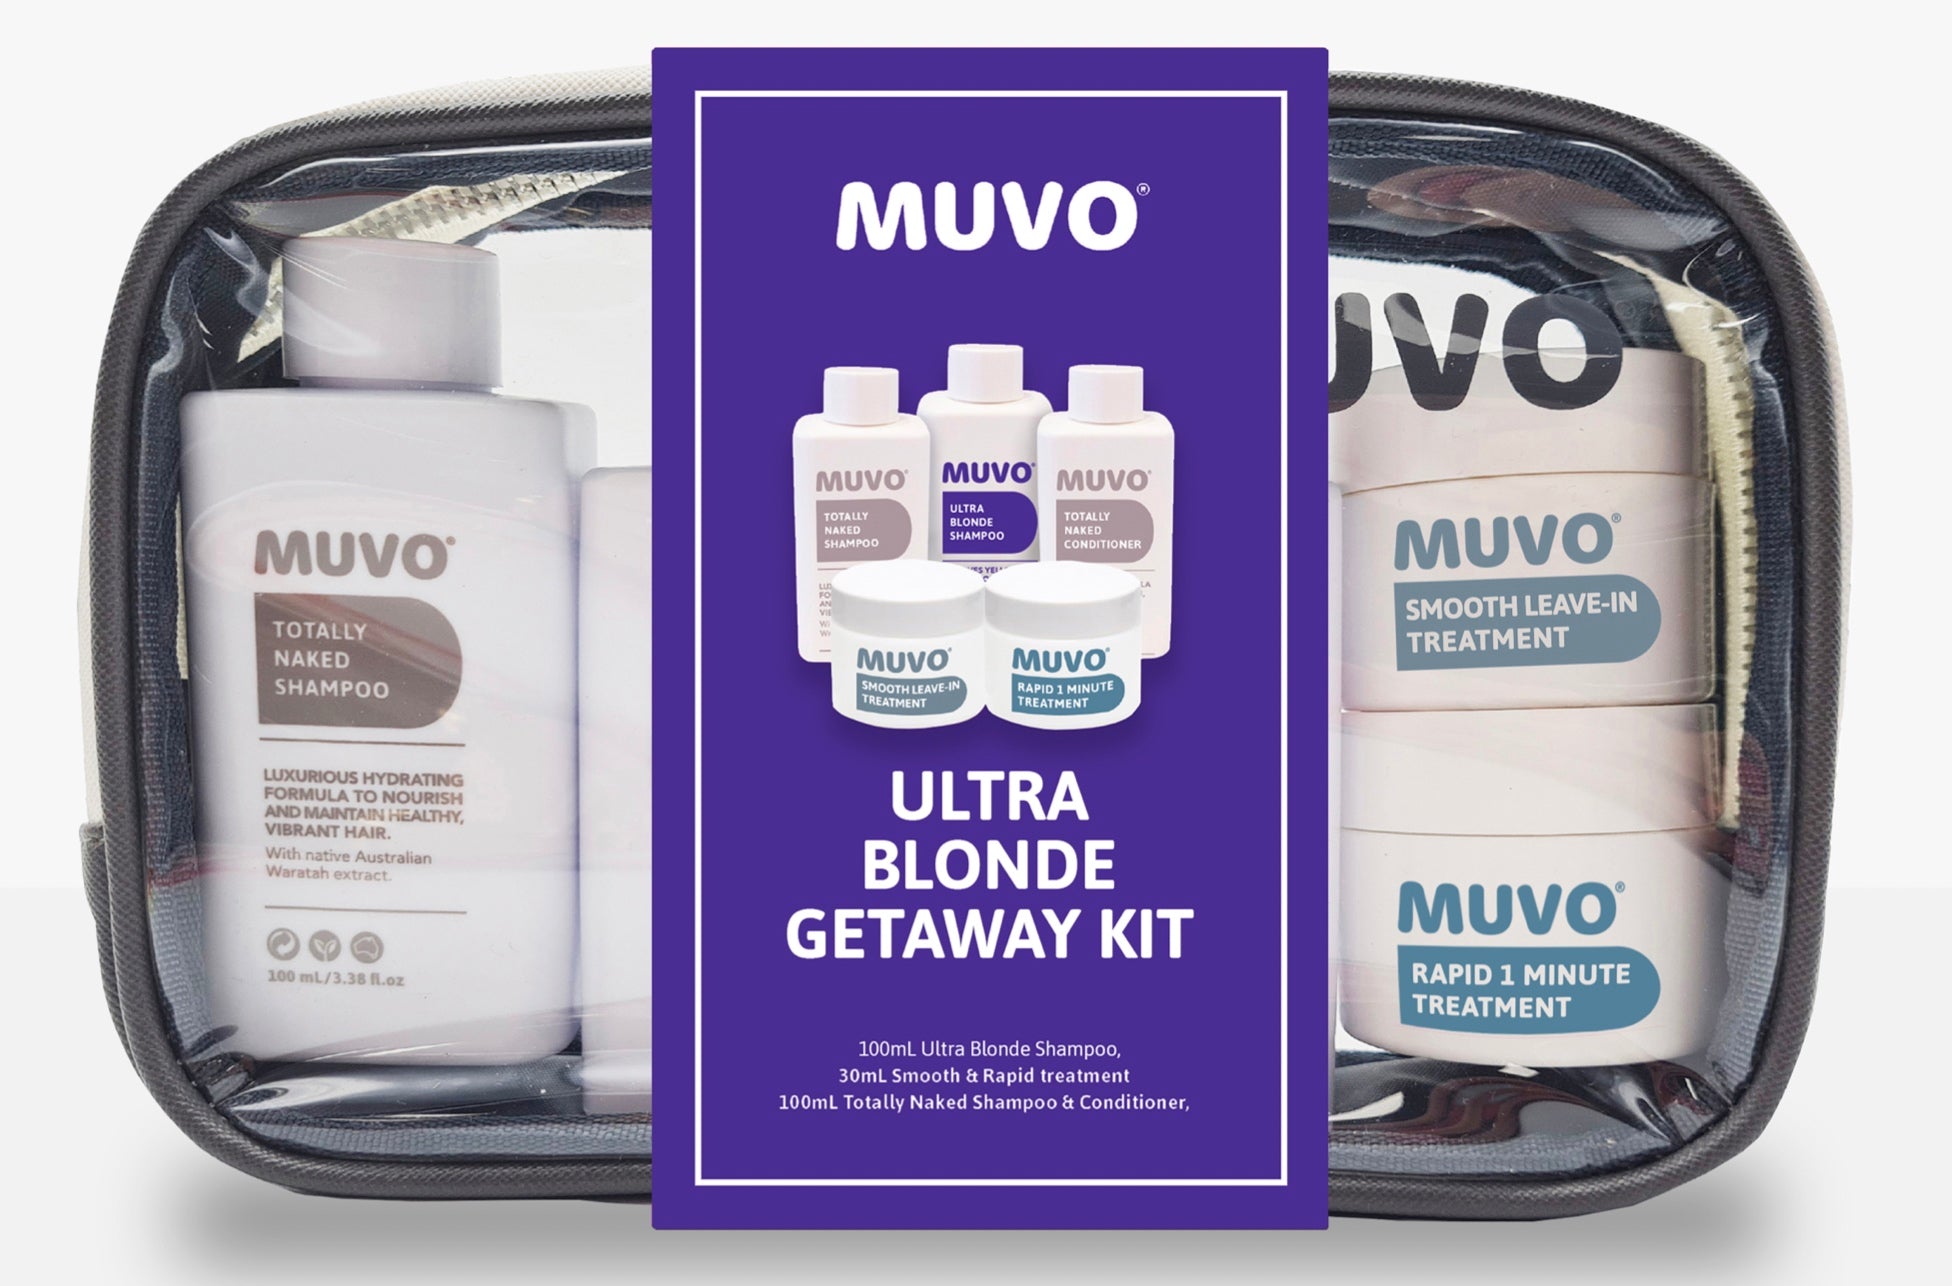 MUVO Ultra Blonde Getaway Kit